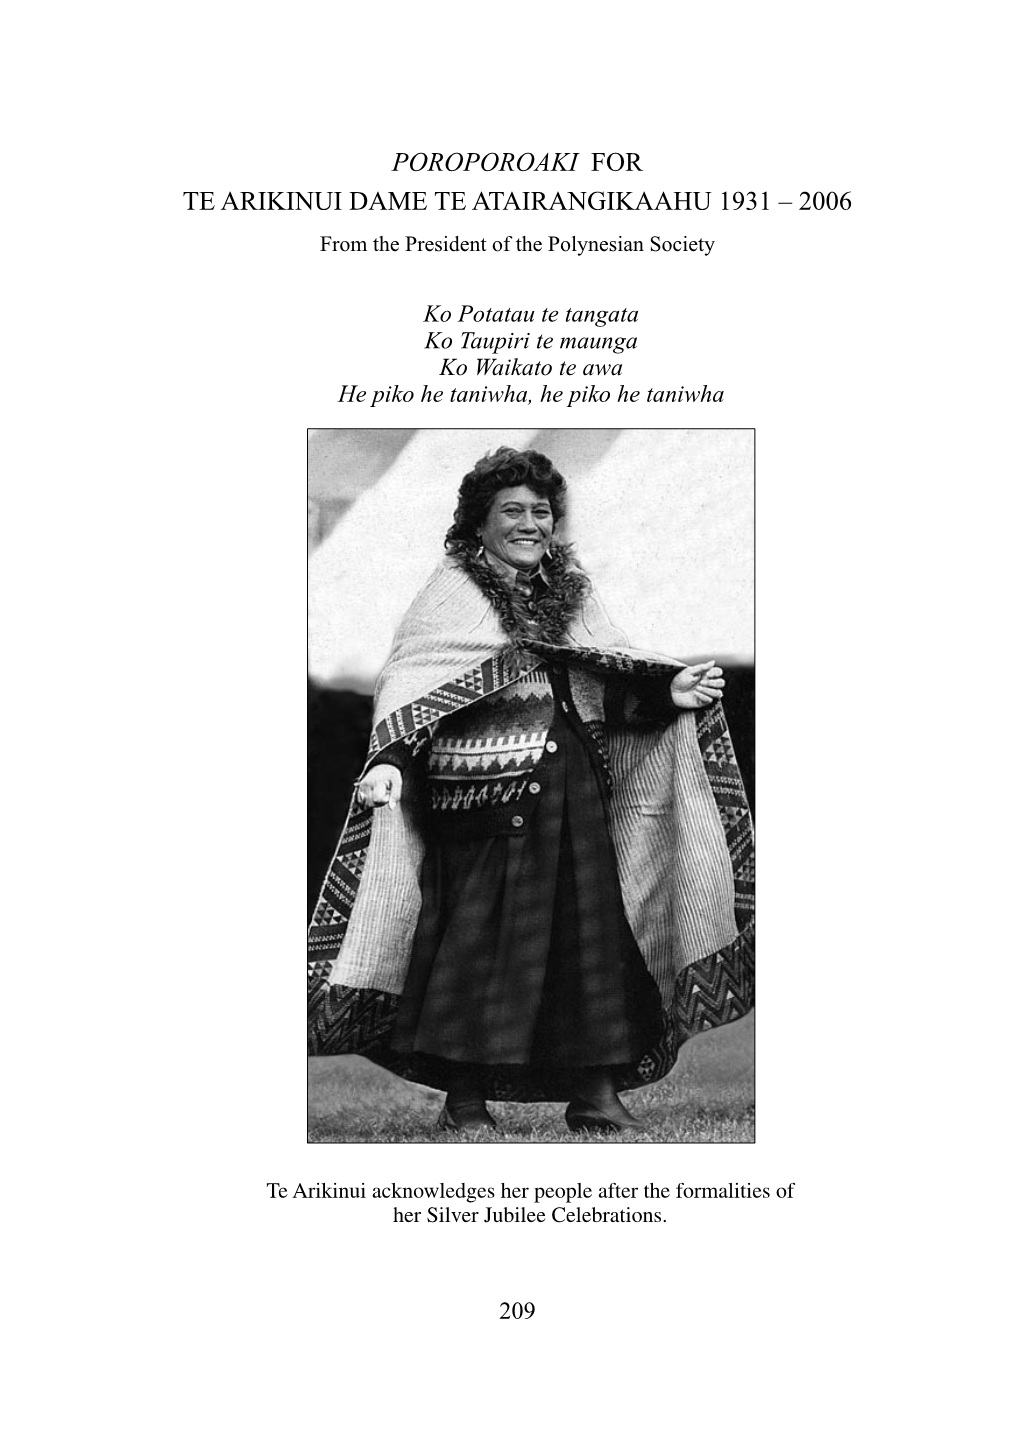 POROPOROAKI for TE ARIKINUI DAME TE ATAIRANGIKAAHU 1931 – 2006 from the President of the Polynesian Society